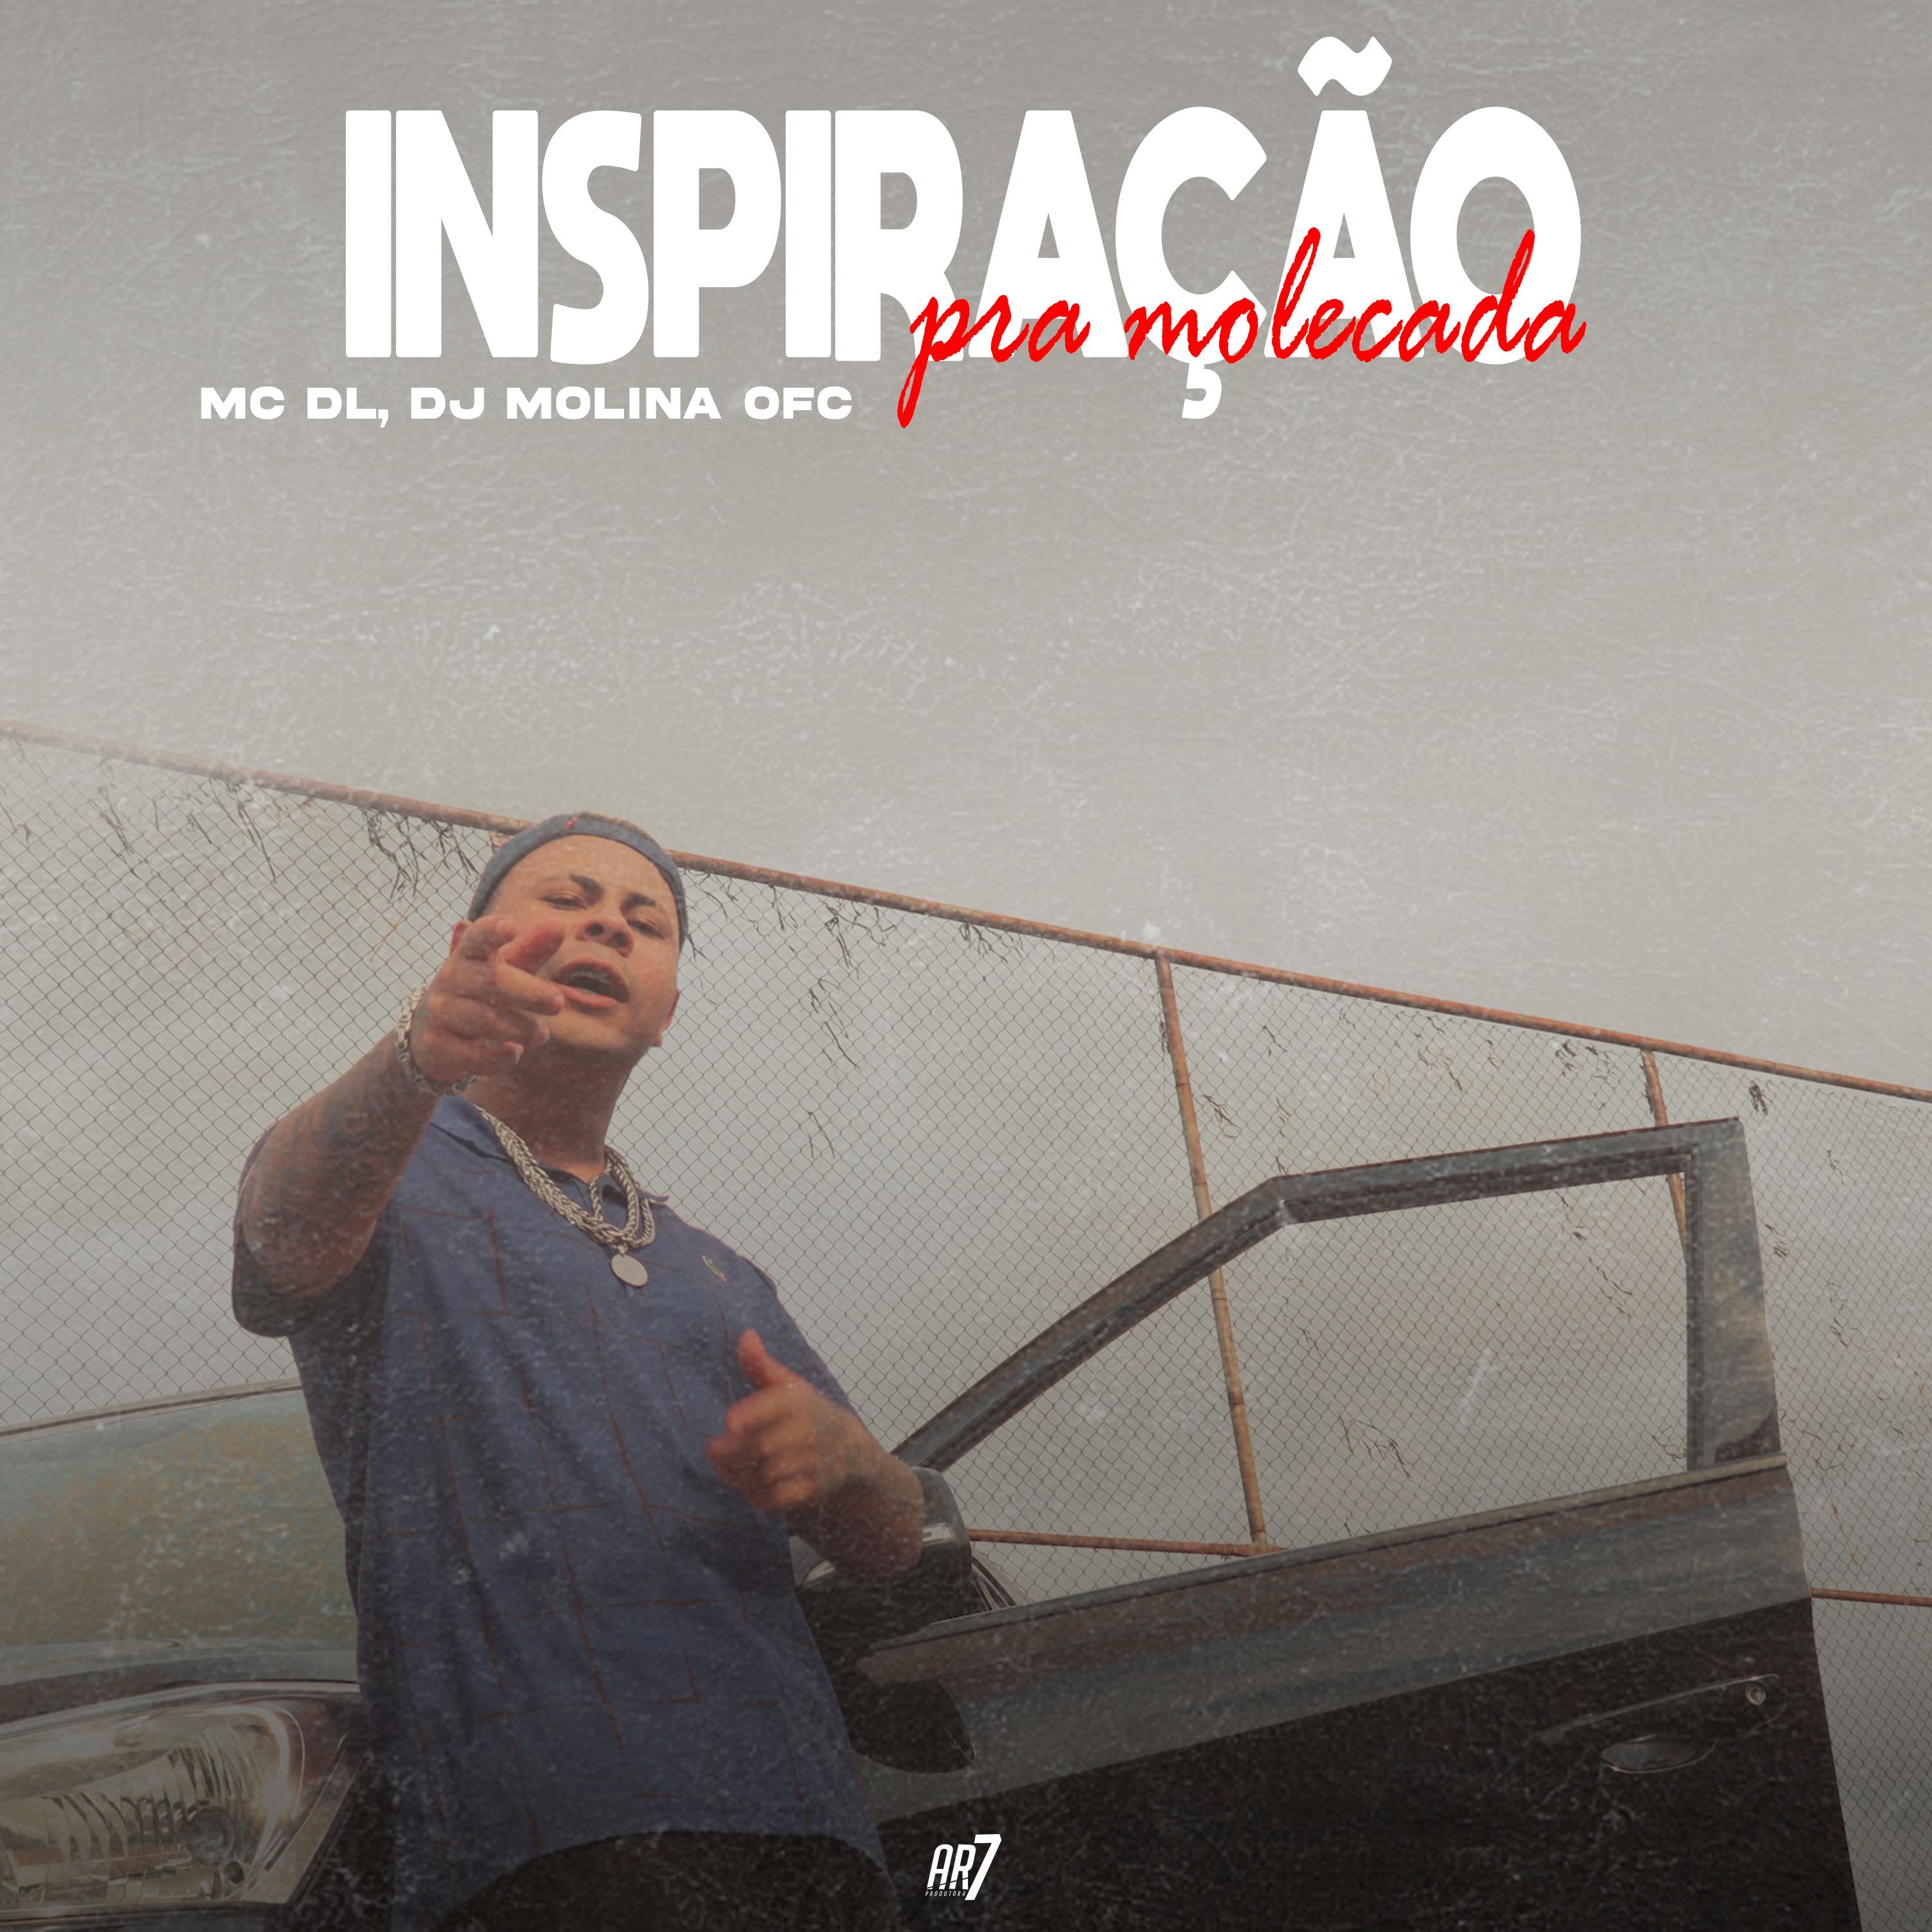 Альбом Inspiração pra Molecada исполнителя DJ MOLINA OFC, Mc DL